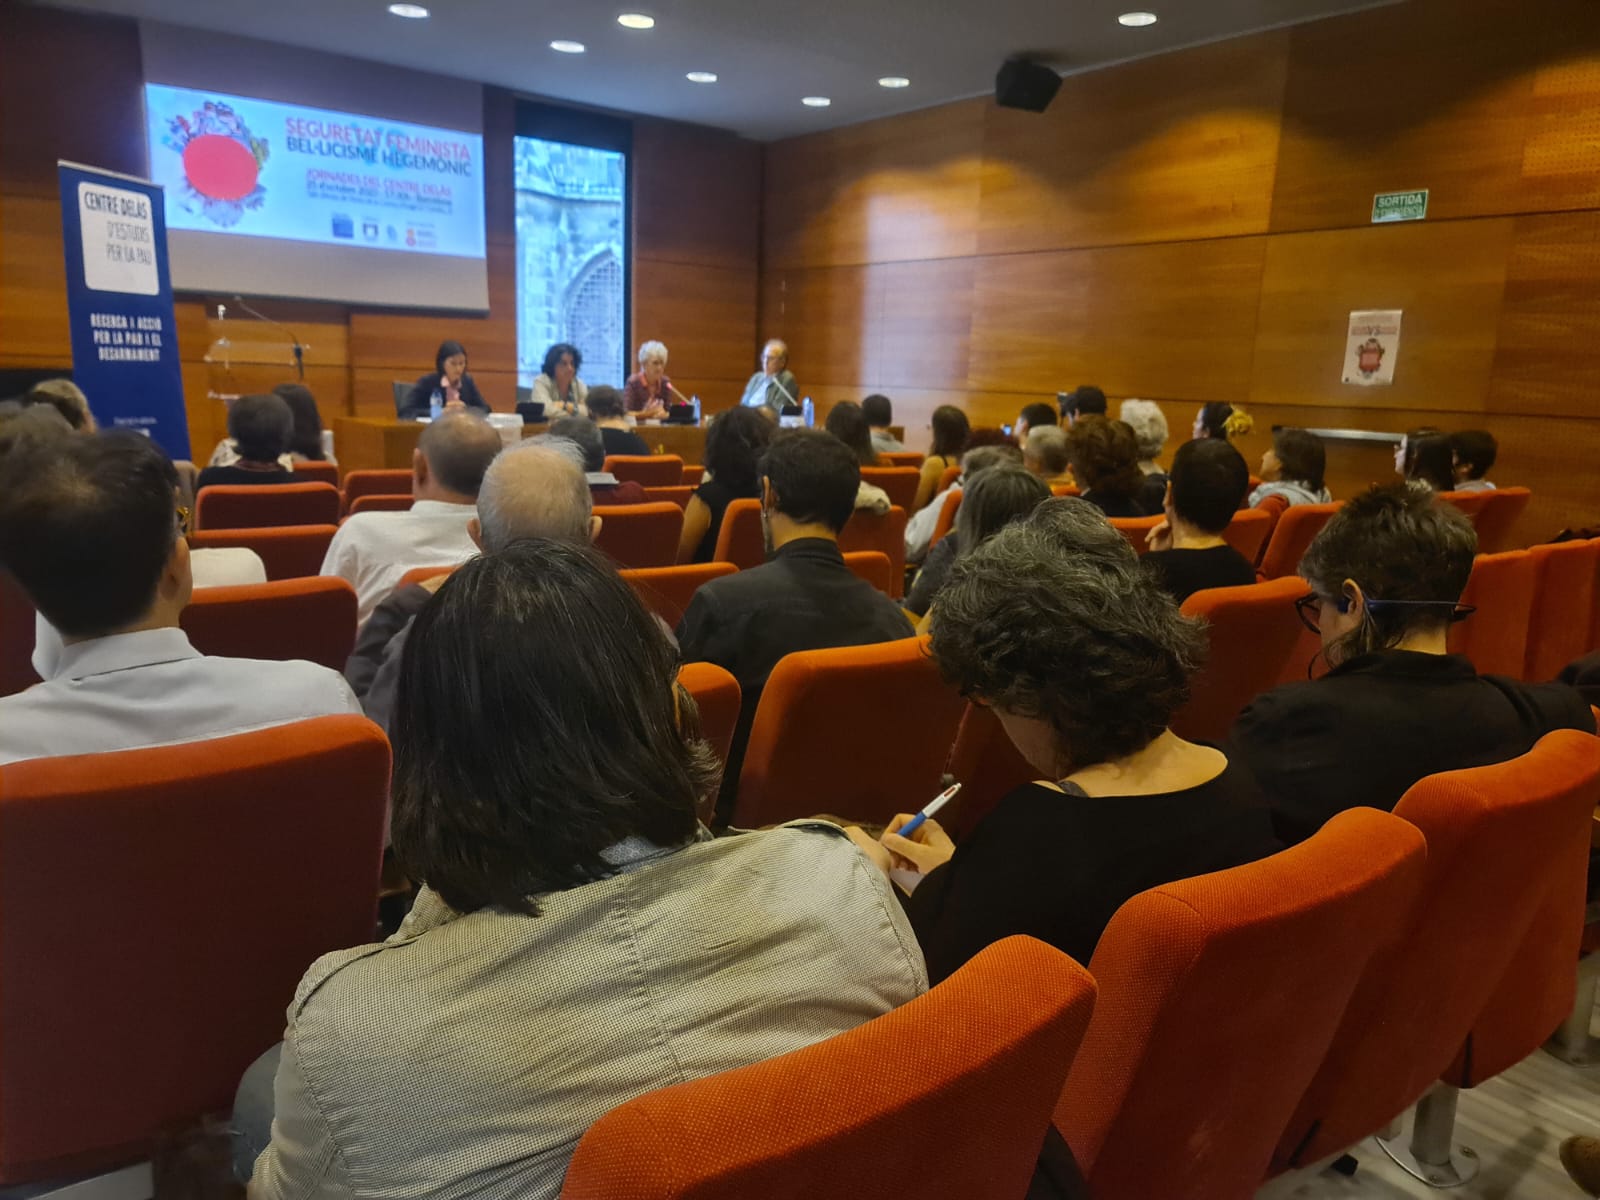 Las Jornadas “Seguridad feminista contra el belicismo hegemónico” reúnen a cerca de un centenar de personas en Barcelona para debatir y poner en valor teorías críticas de la seguridad